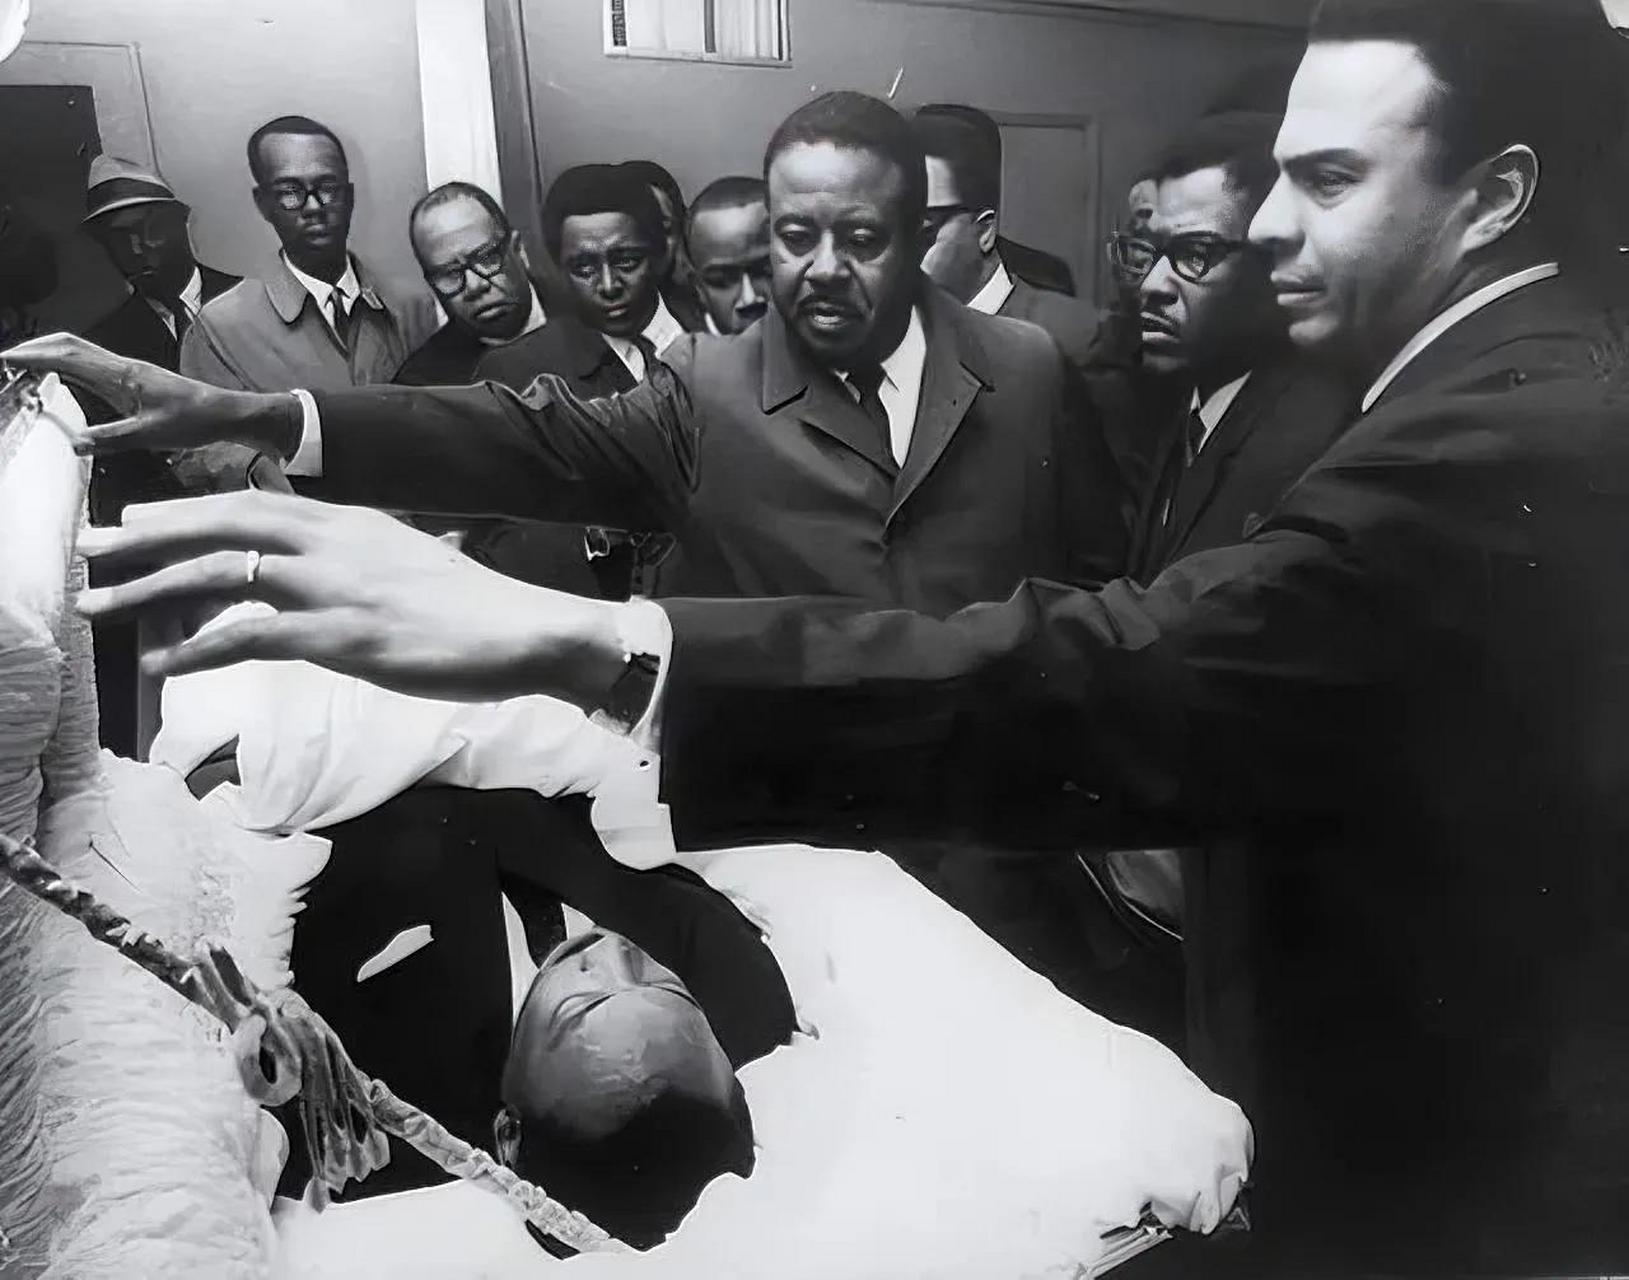 这是1968年,美国街头,被暗杀的马丁·路德·金,一张罕见的老照片,就在